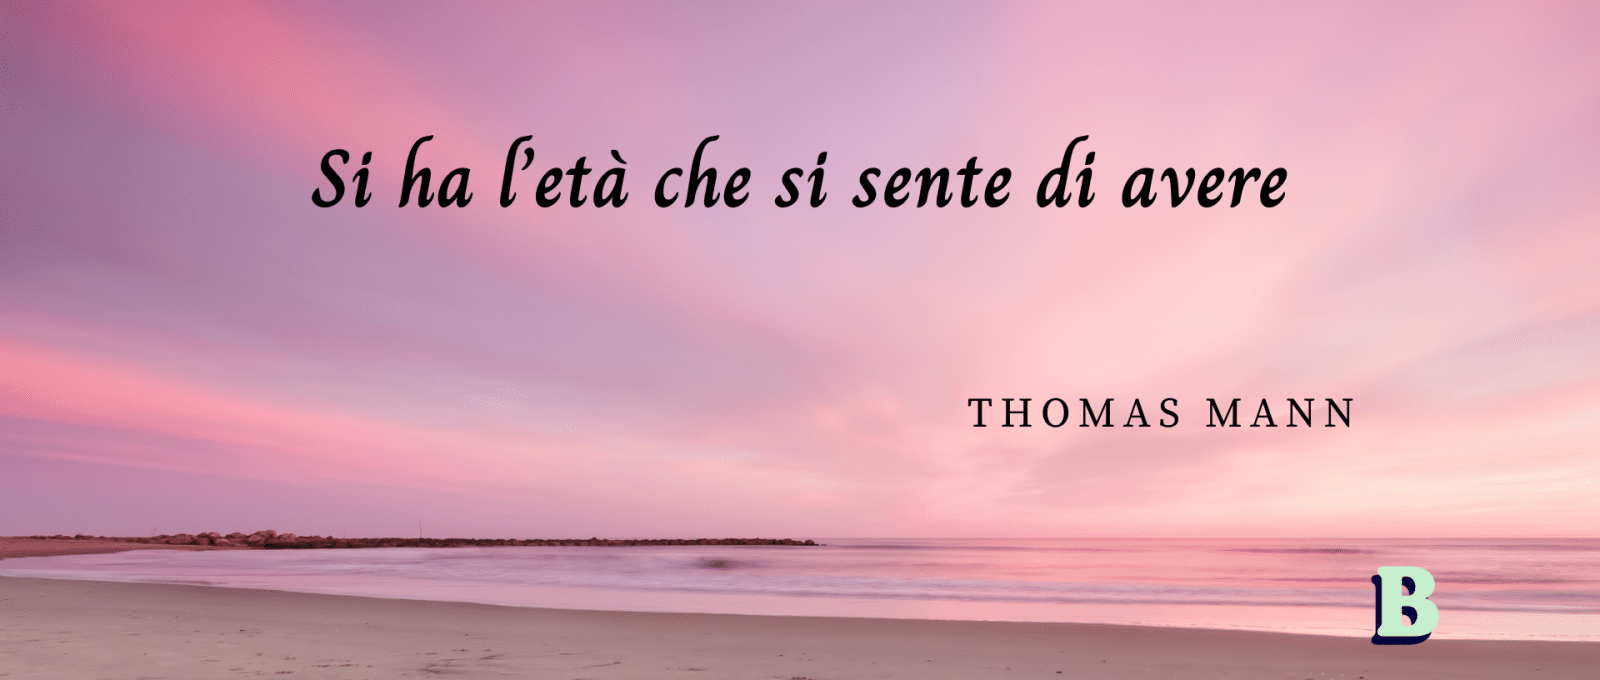 frasi Thomas Mann